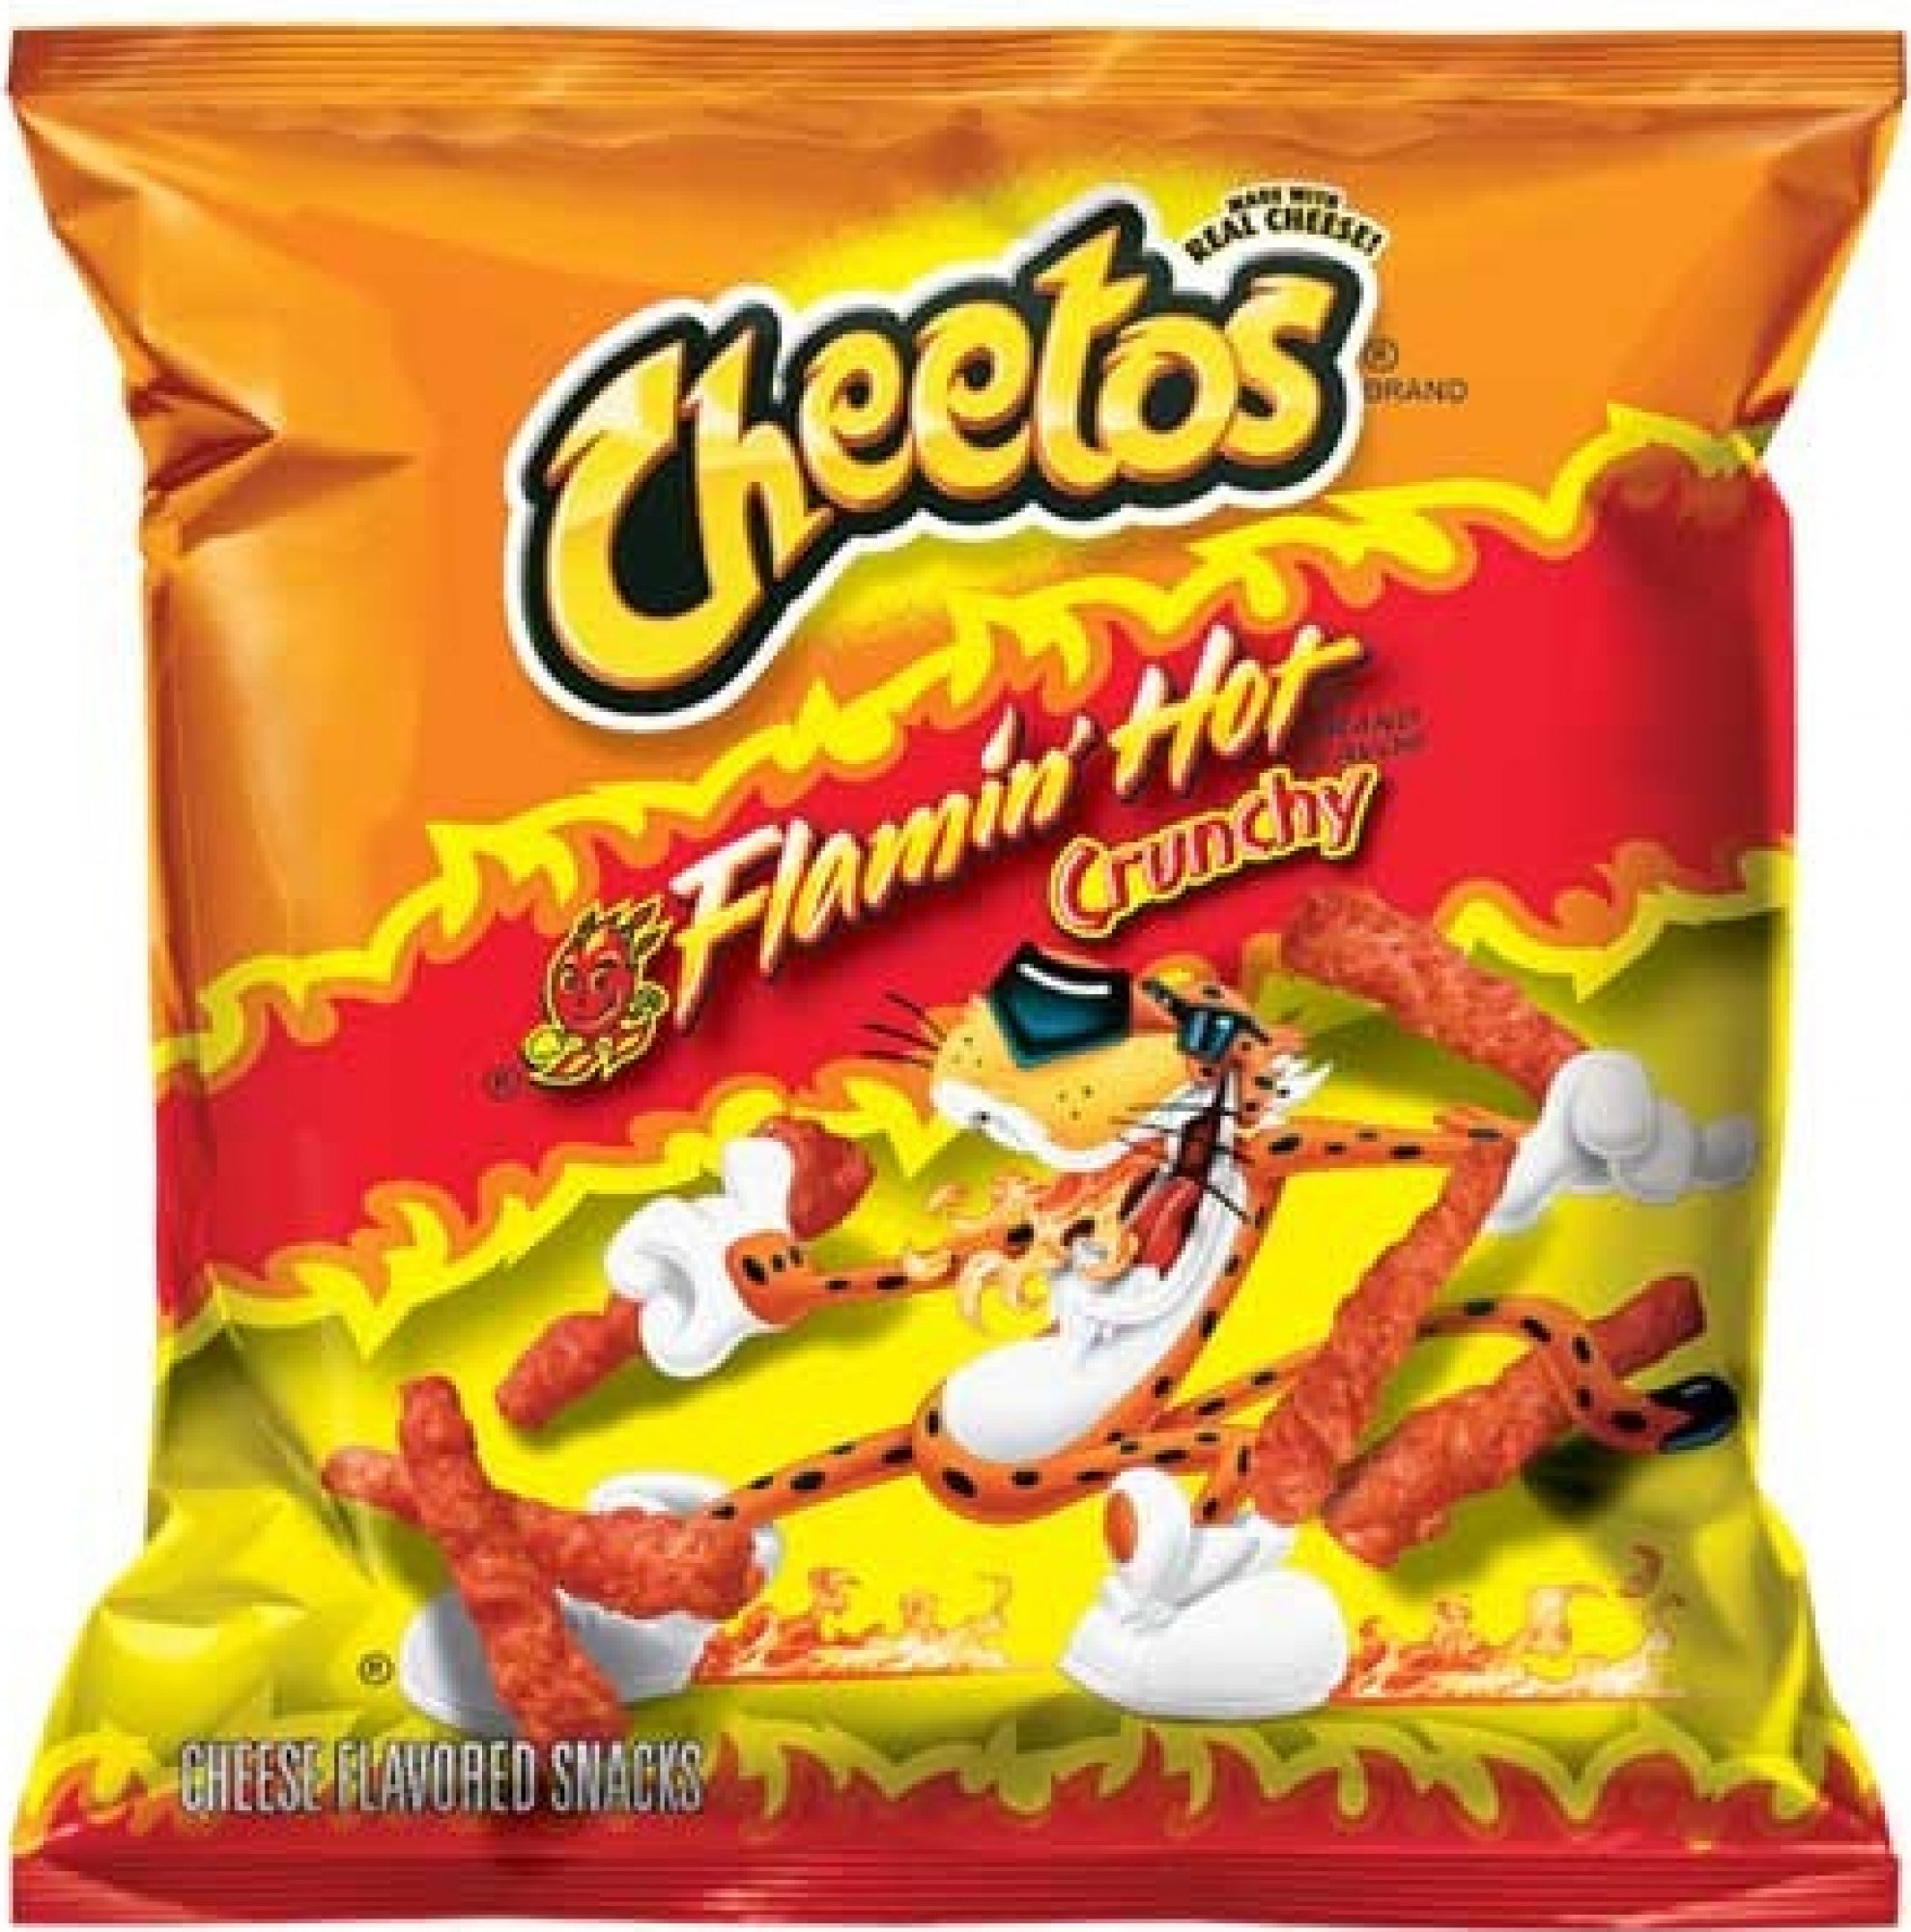 Cheetos - Flamin Hot Crunchy 35,4g Ostrá příchuť vynikajících Cheetos z USA. Svačiny CHEETOS jsou velmi oblíbené sýrové pochoutky, které baví každého! 

Složení: kukuřičná mouka (kukuřičná mouka, síran železnatý, niacin,  ...